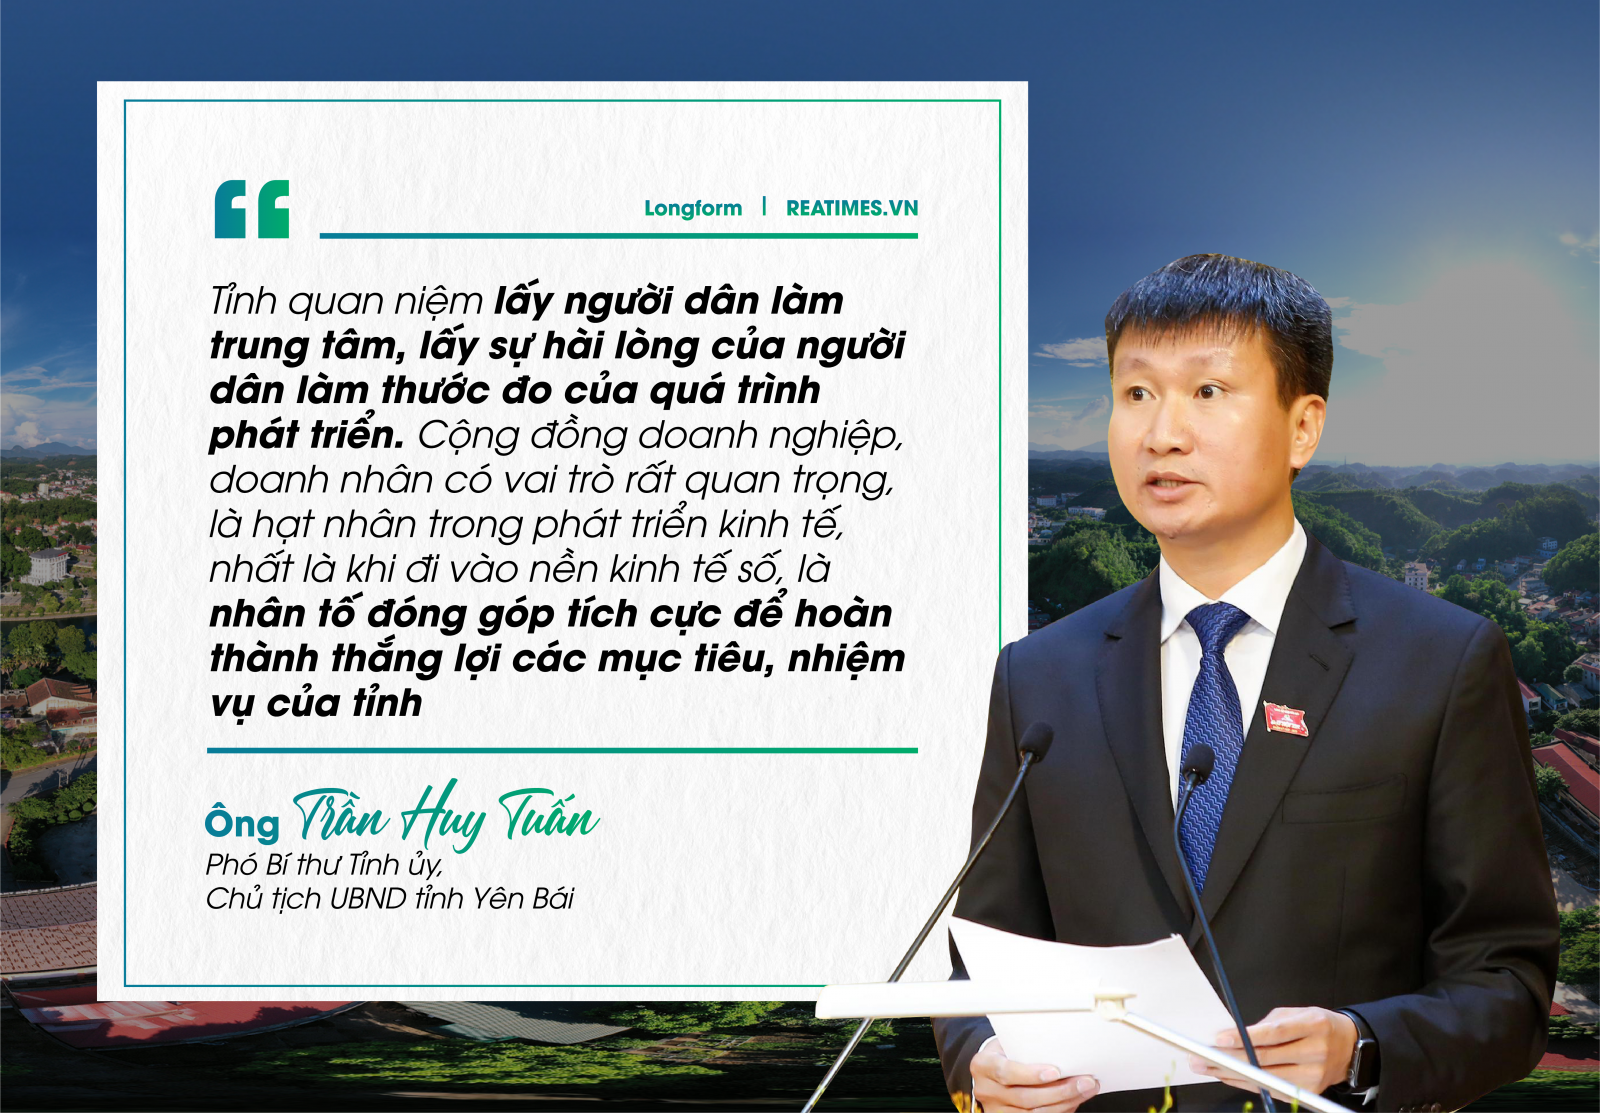 Chủ tịch UBND tỉnh Yên Bái: Khát vọng phát triển vì sự hài lòng, hạnh phúc của nhân dân